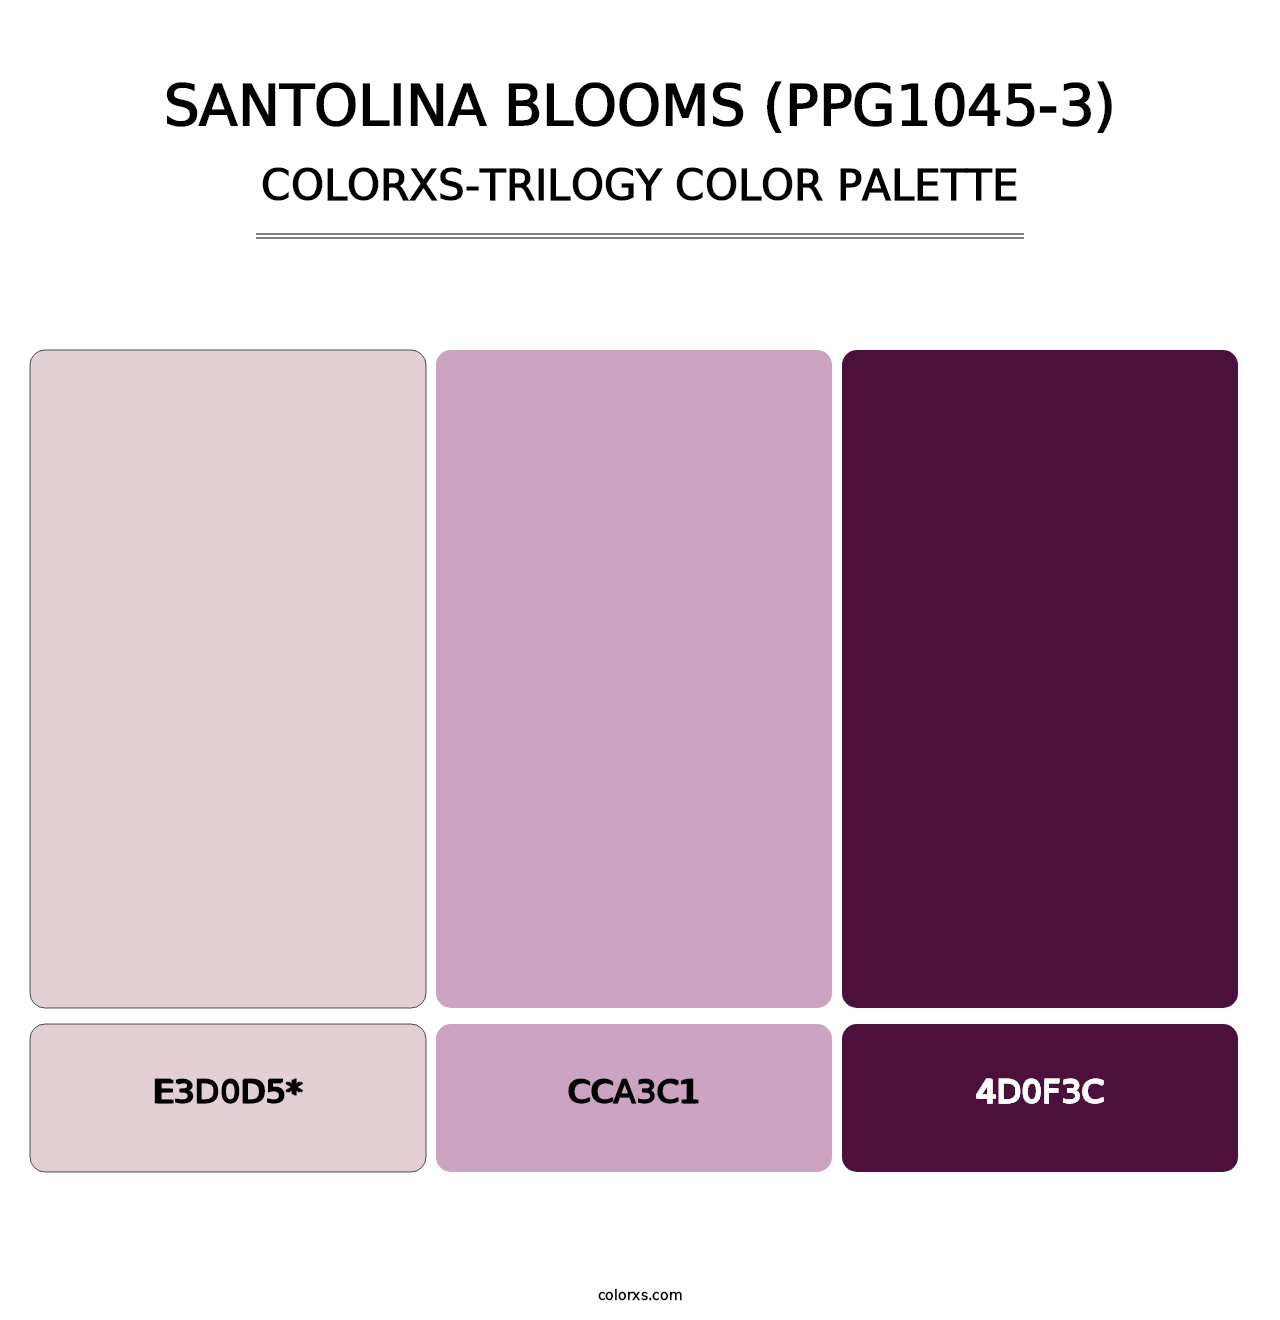 Santolina Blooms (PPG1045-3) - Colorxs Trilogy Palette